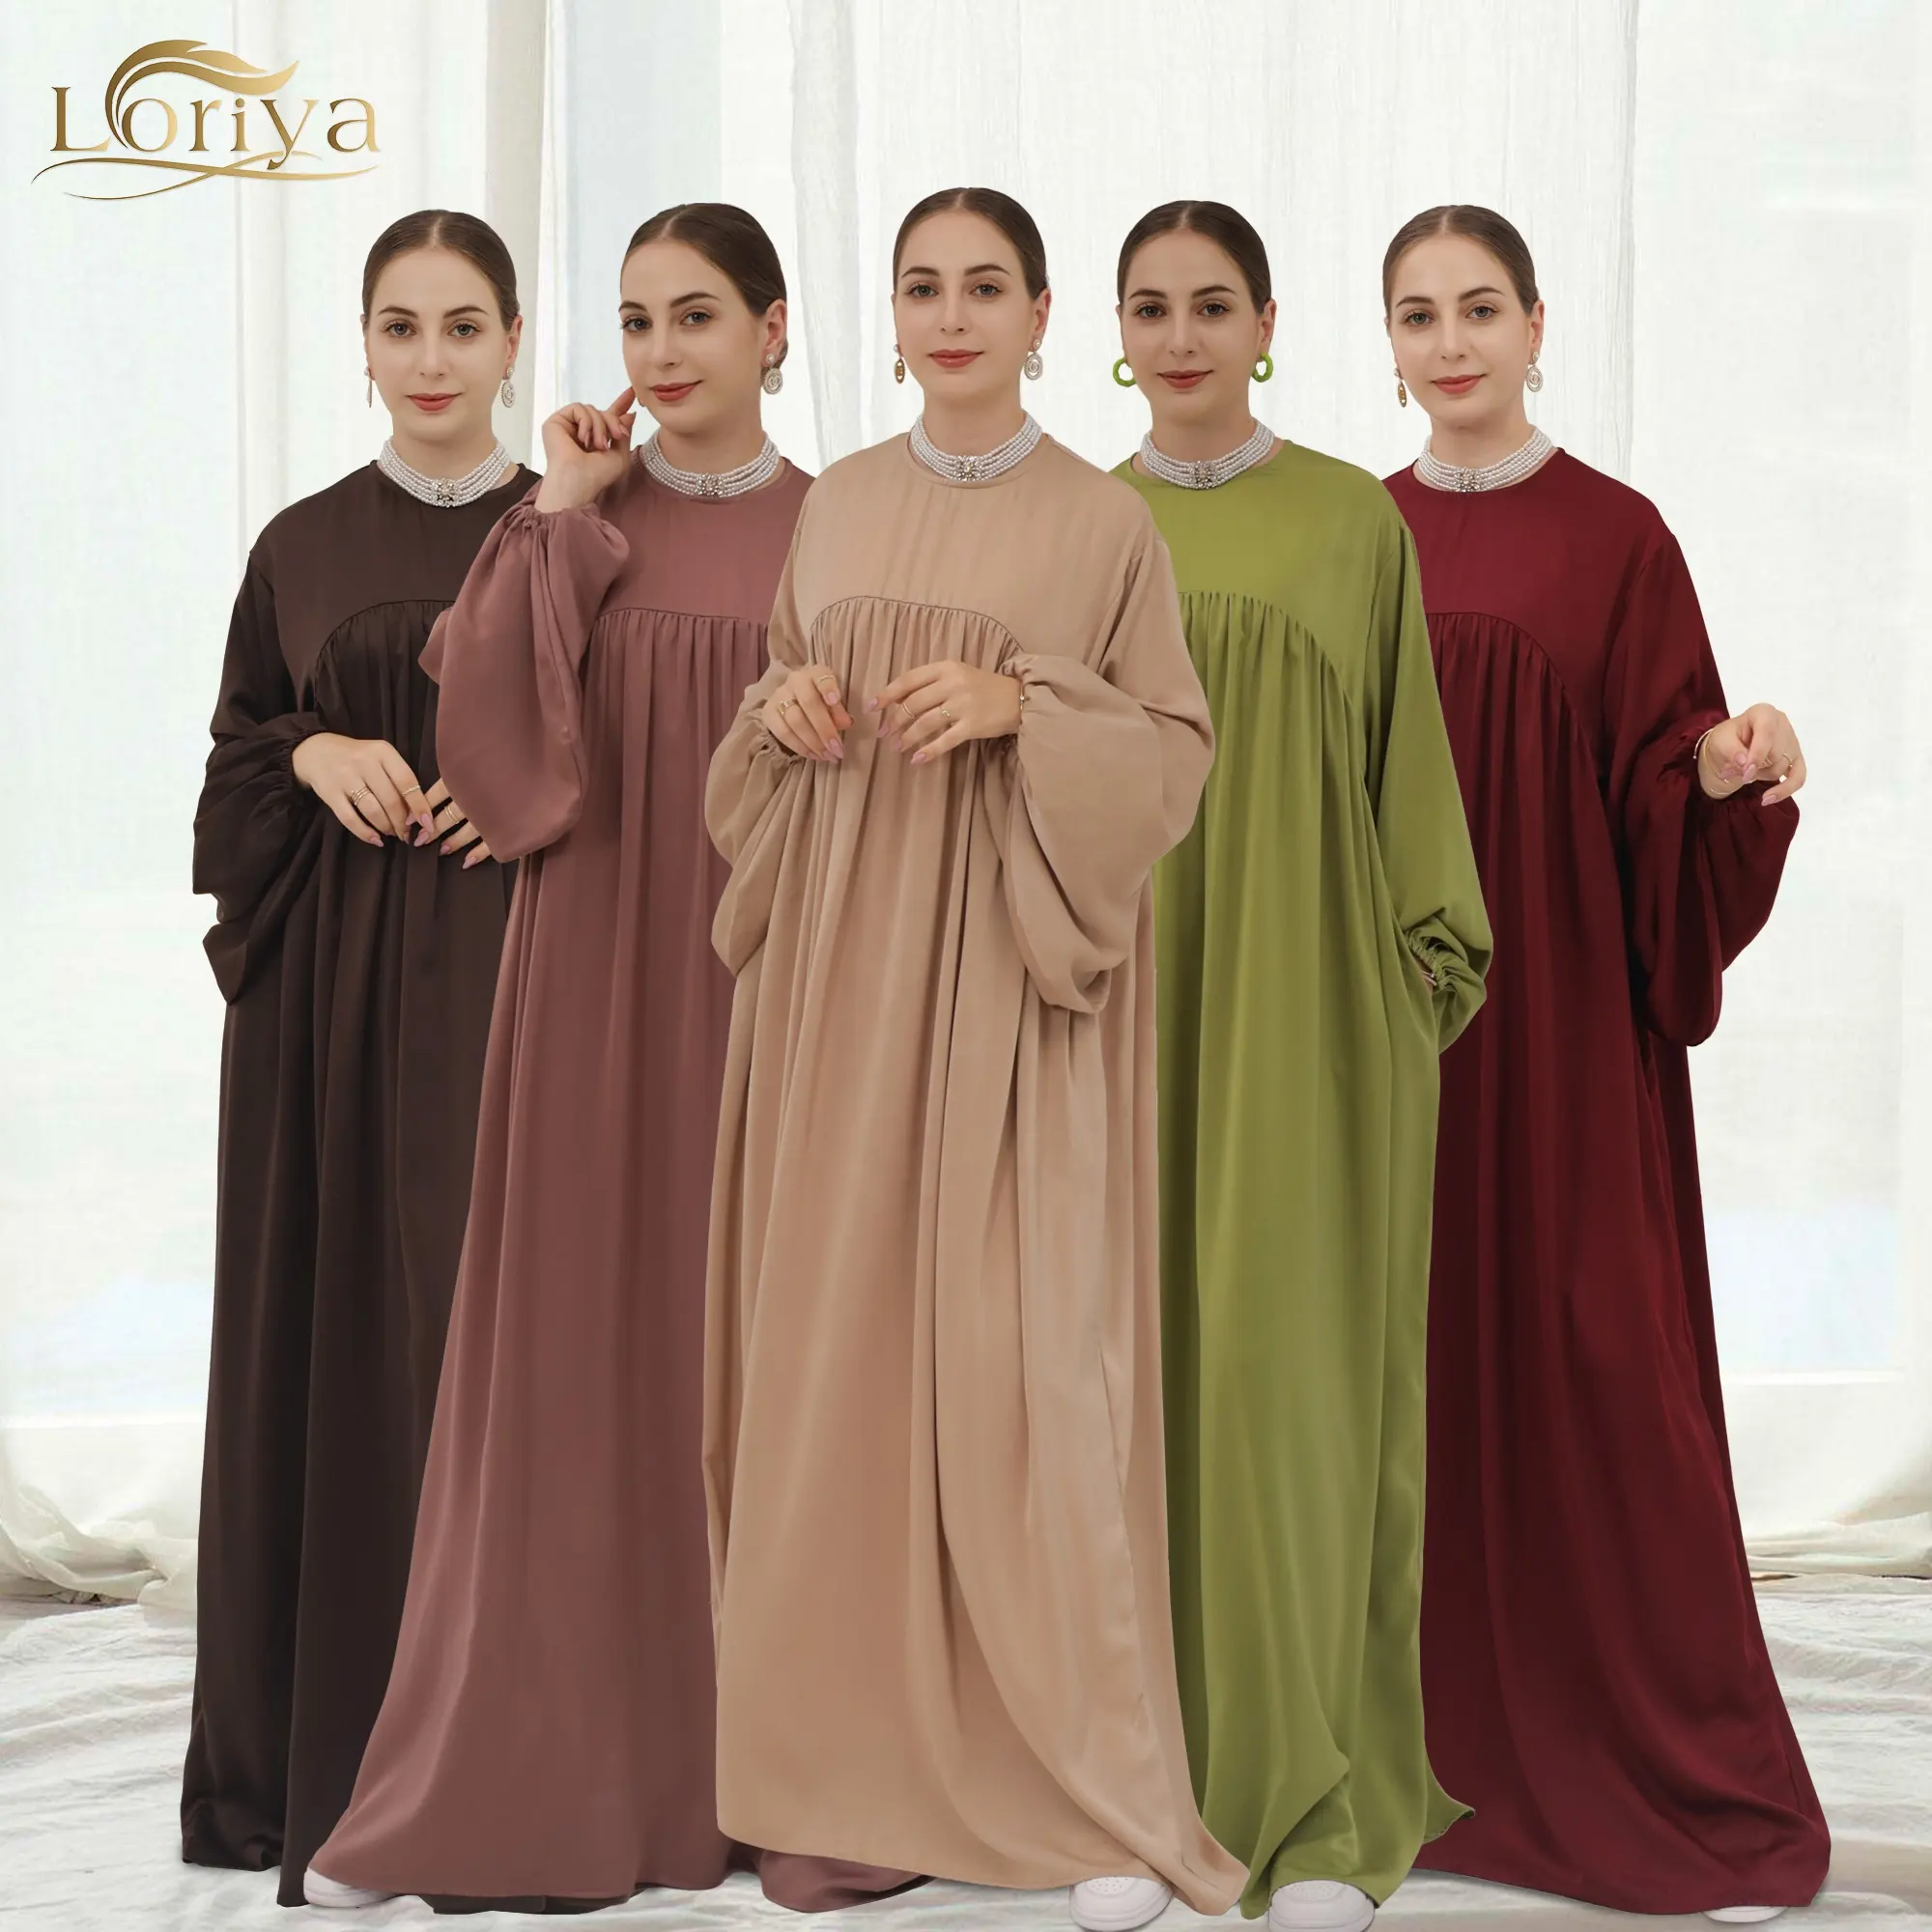 Loriya geschlossen Abayas Puff Ärmel Dubai Türkei Hijab Kleid 2 Stück Set Plain Abaya Islamische Kleidung für muslimische Frauen